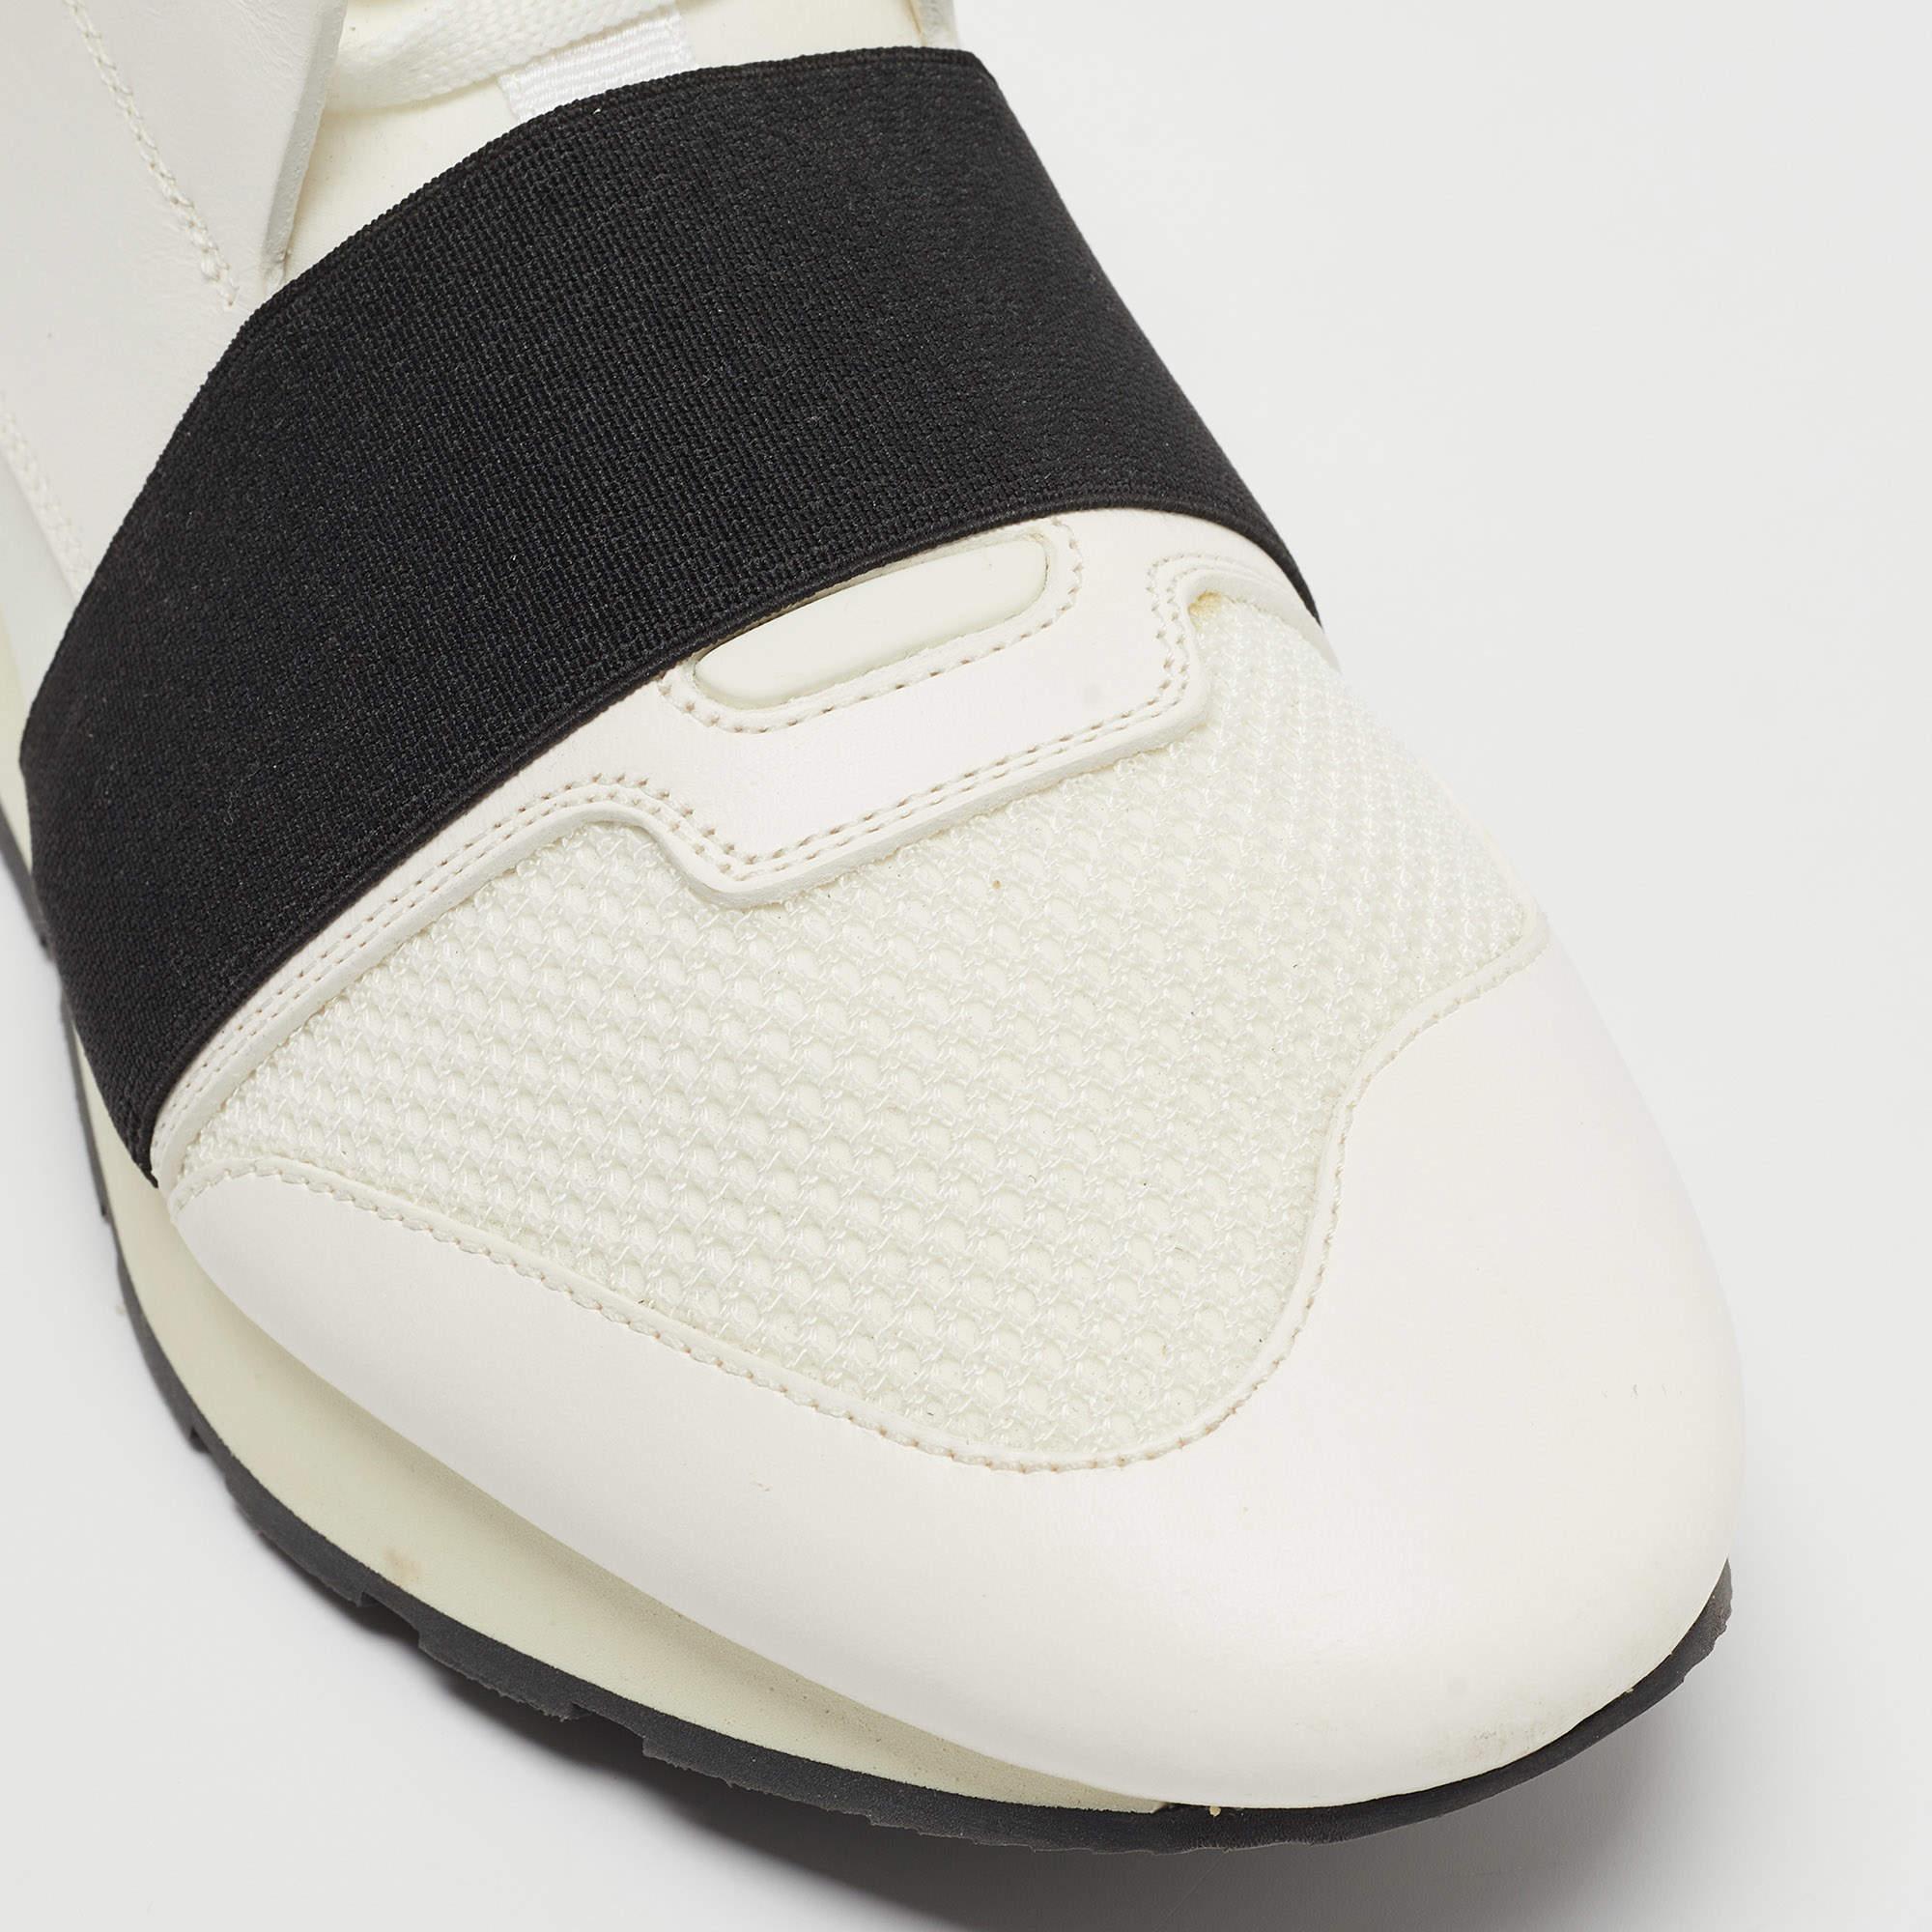 Cette paire de baskets Race Runners de Balenciaga est la dernière nouveauté en matière de chaussures. Ces baskets Whiting ont été confectionnées en tissu, cuir et maille et présentent une silhouette chic. Ils sont dotés d'orteils recouverts, de